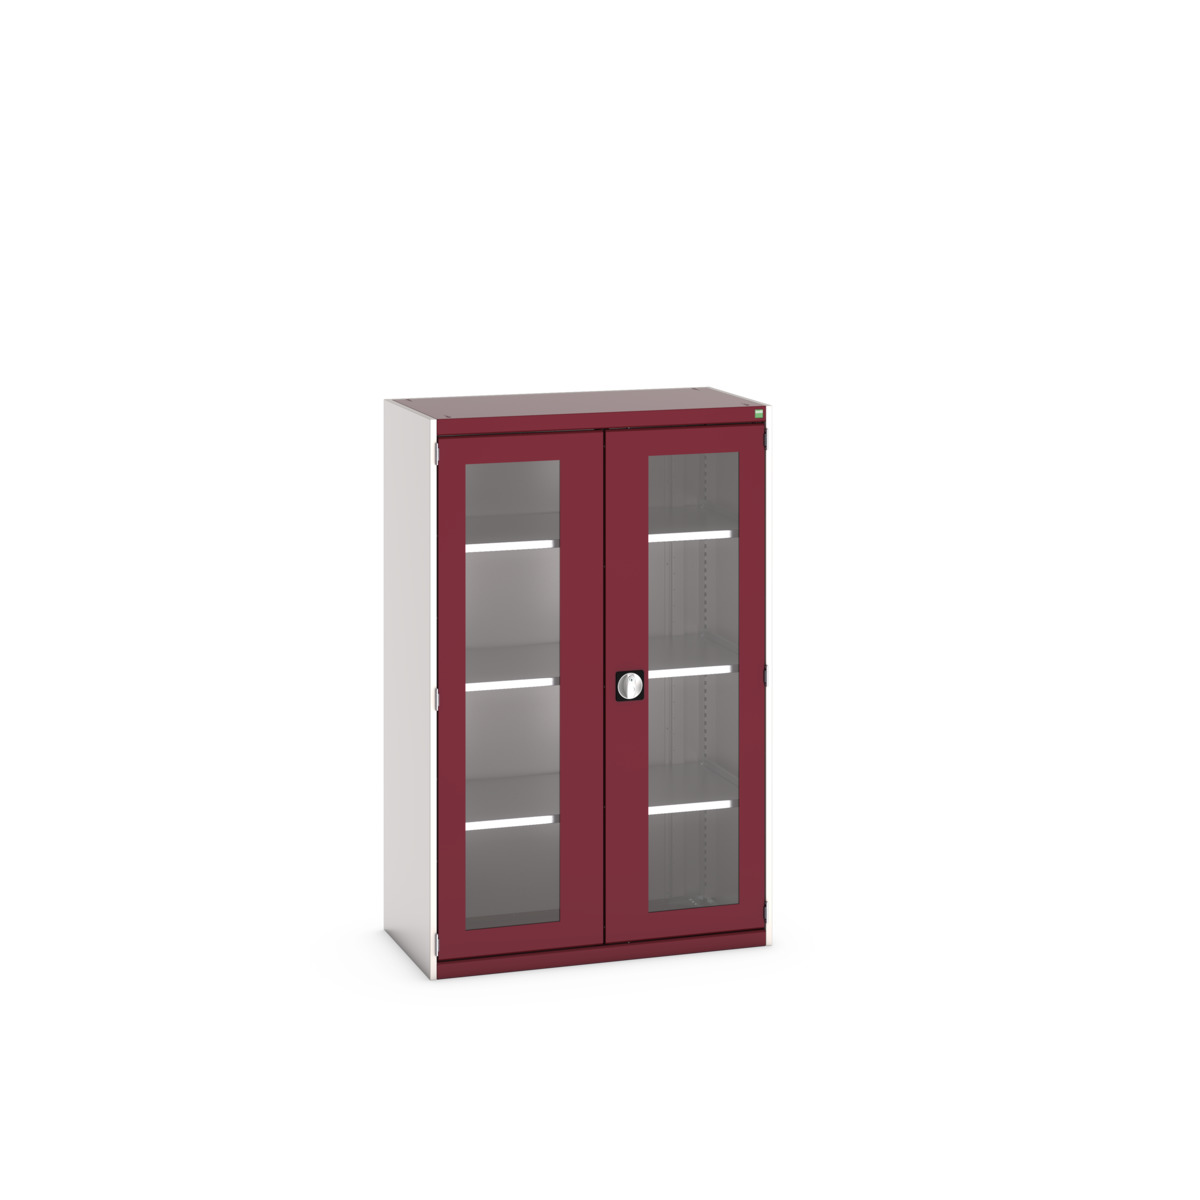 40013062.24V - cubio cupboard